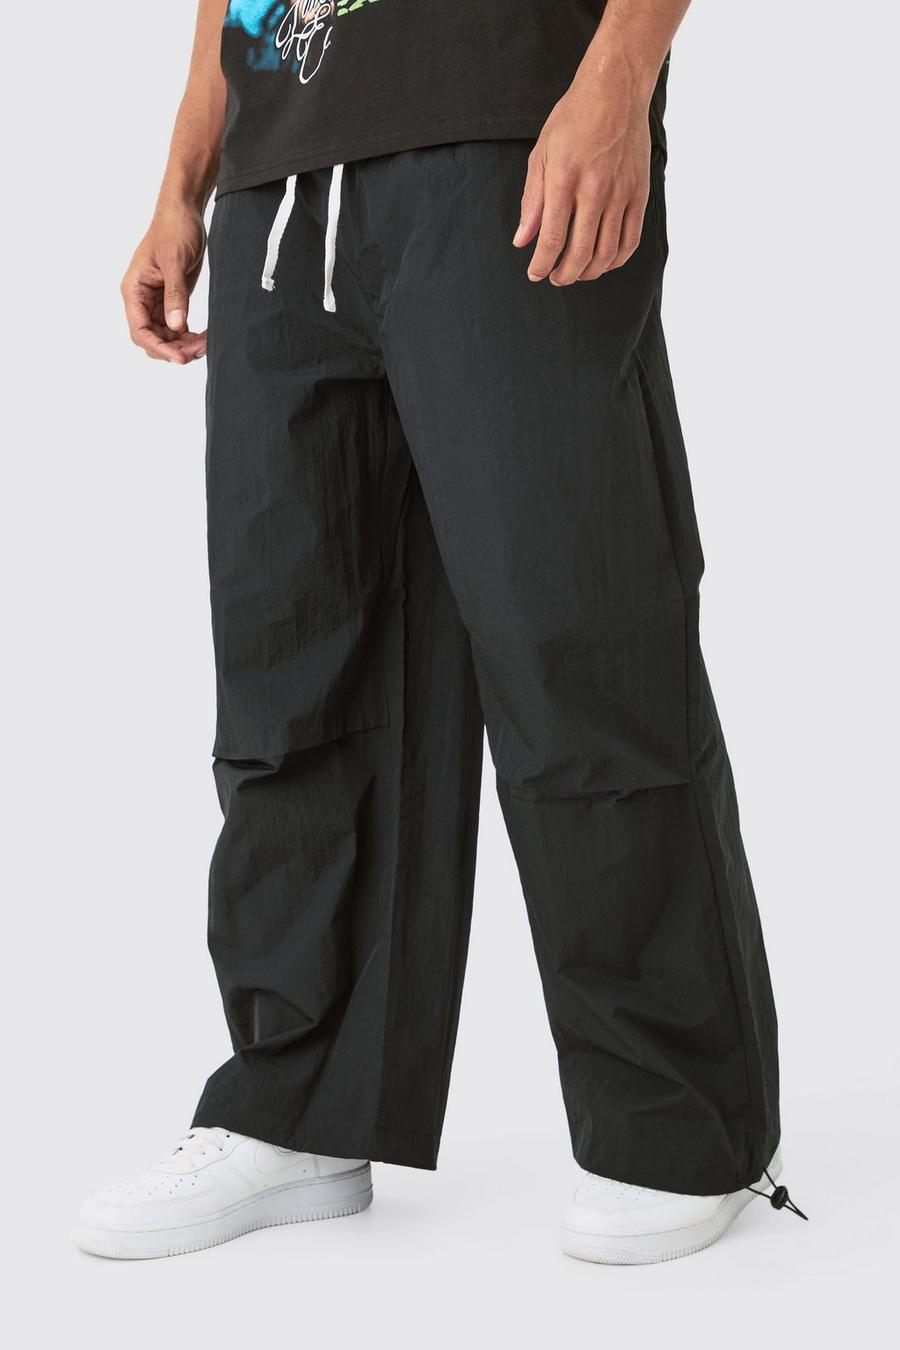 Pantalones bombachos oversize con cintura elástica, Black